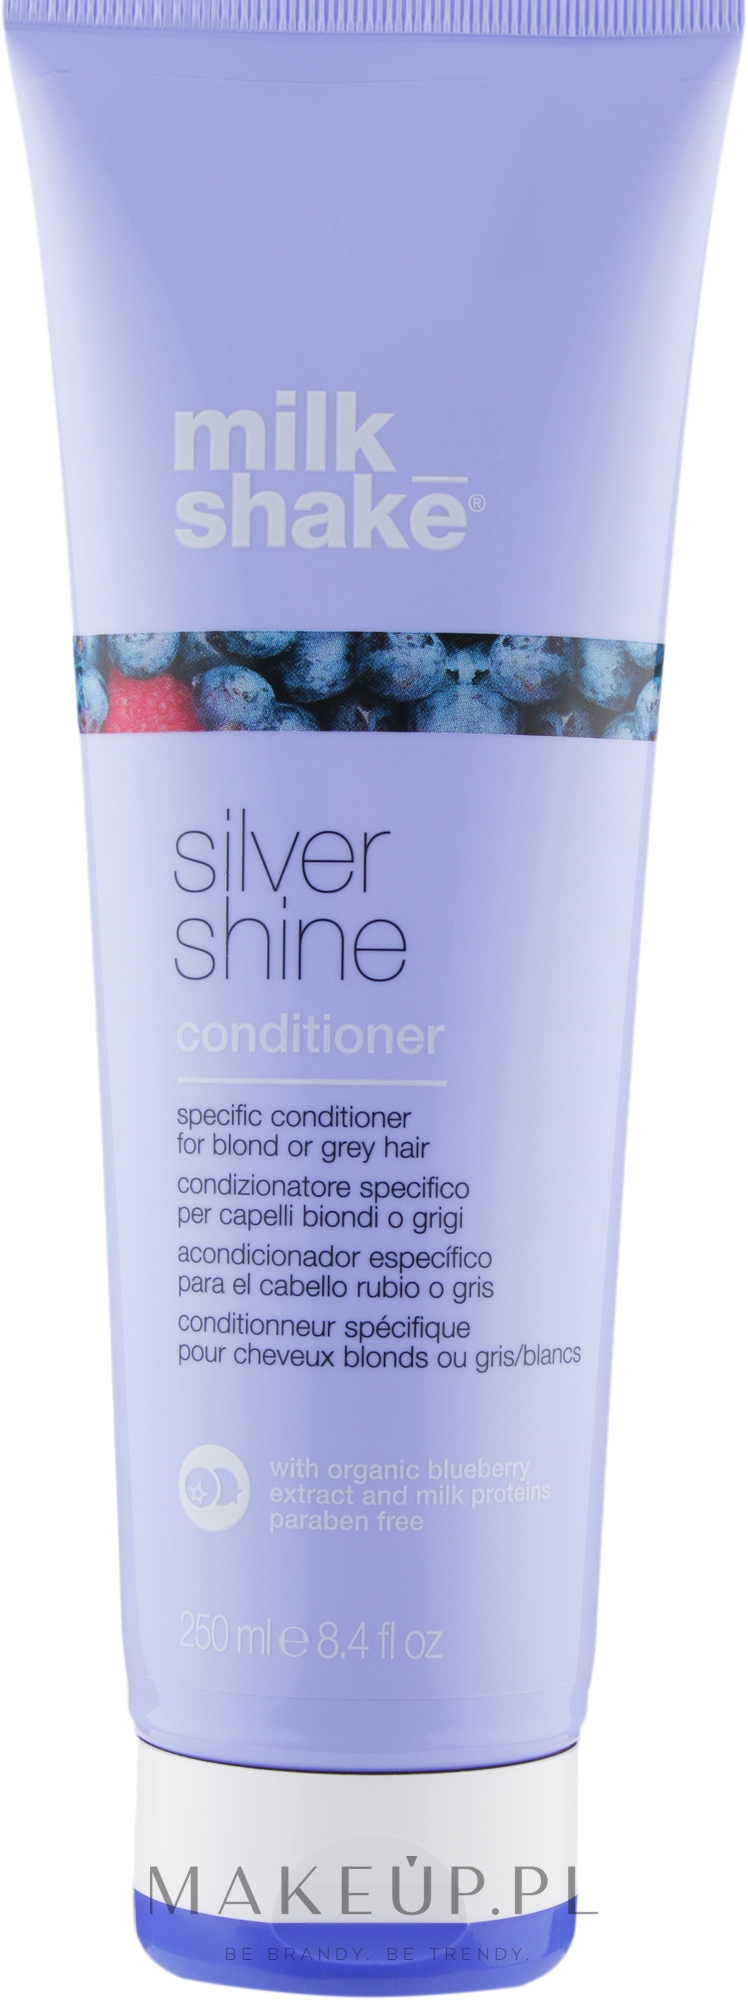 Odżywka do siwych i blond włosów nadająca im blask - Milk Shake Silver Shine Conditioner — Zdjęcie 250 ml